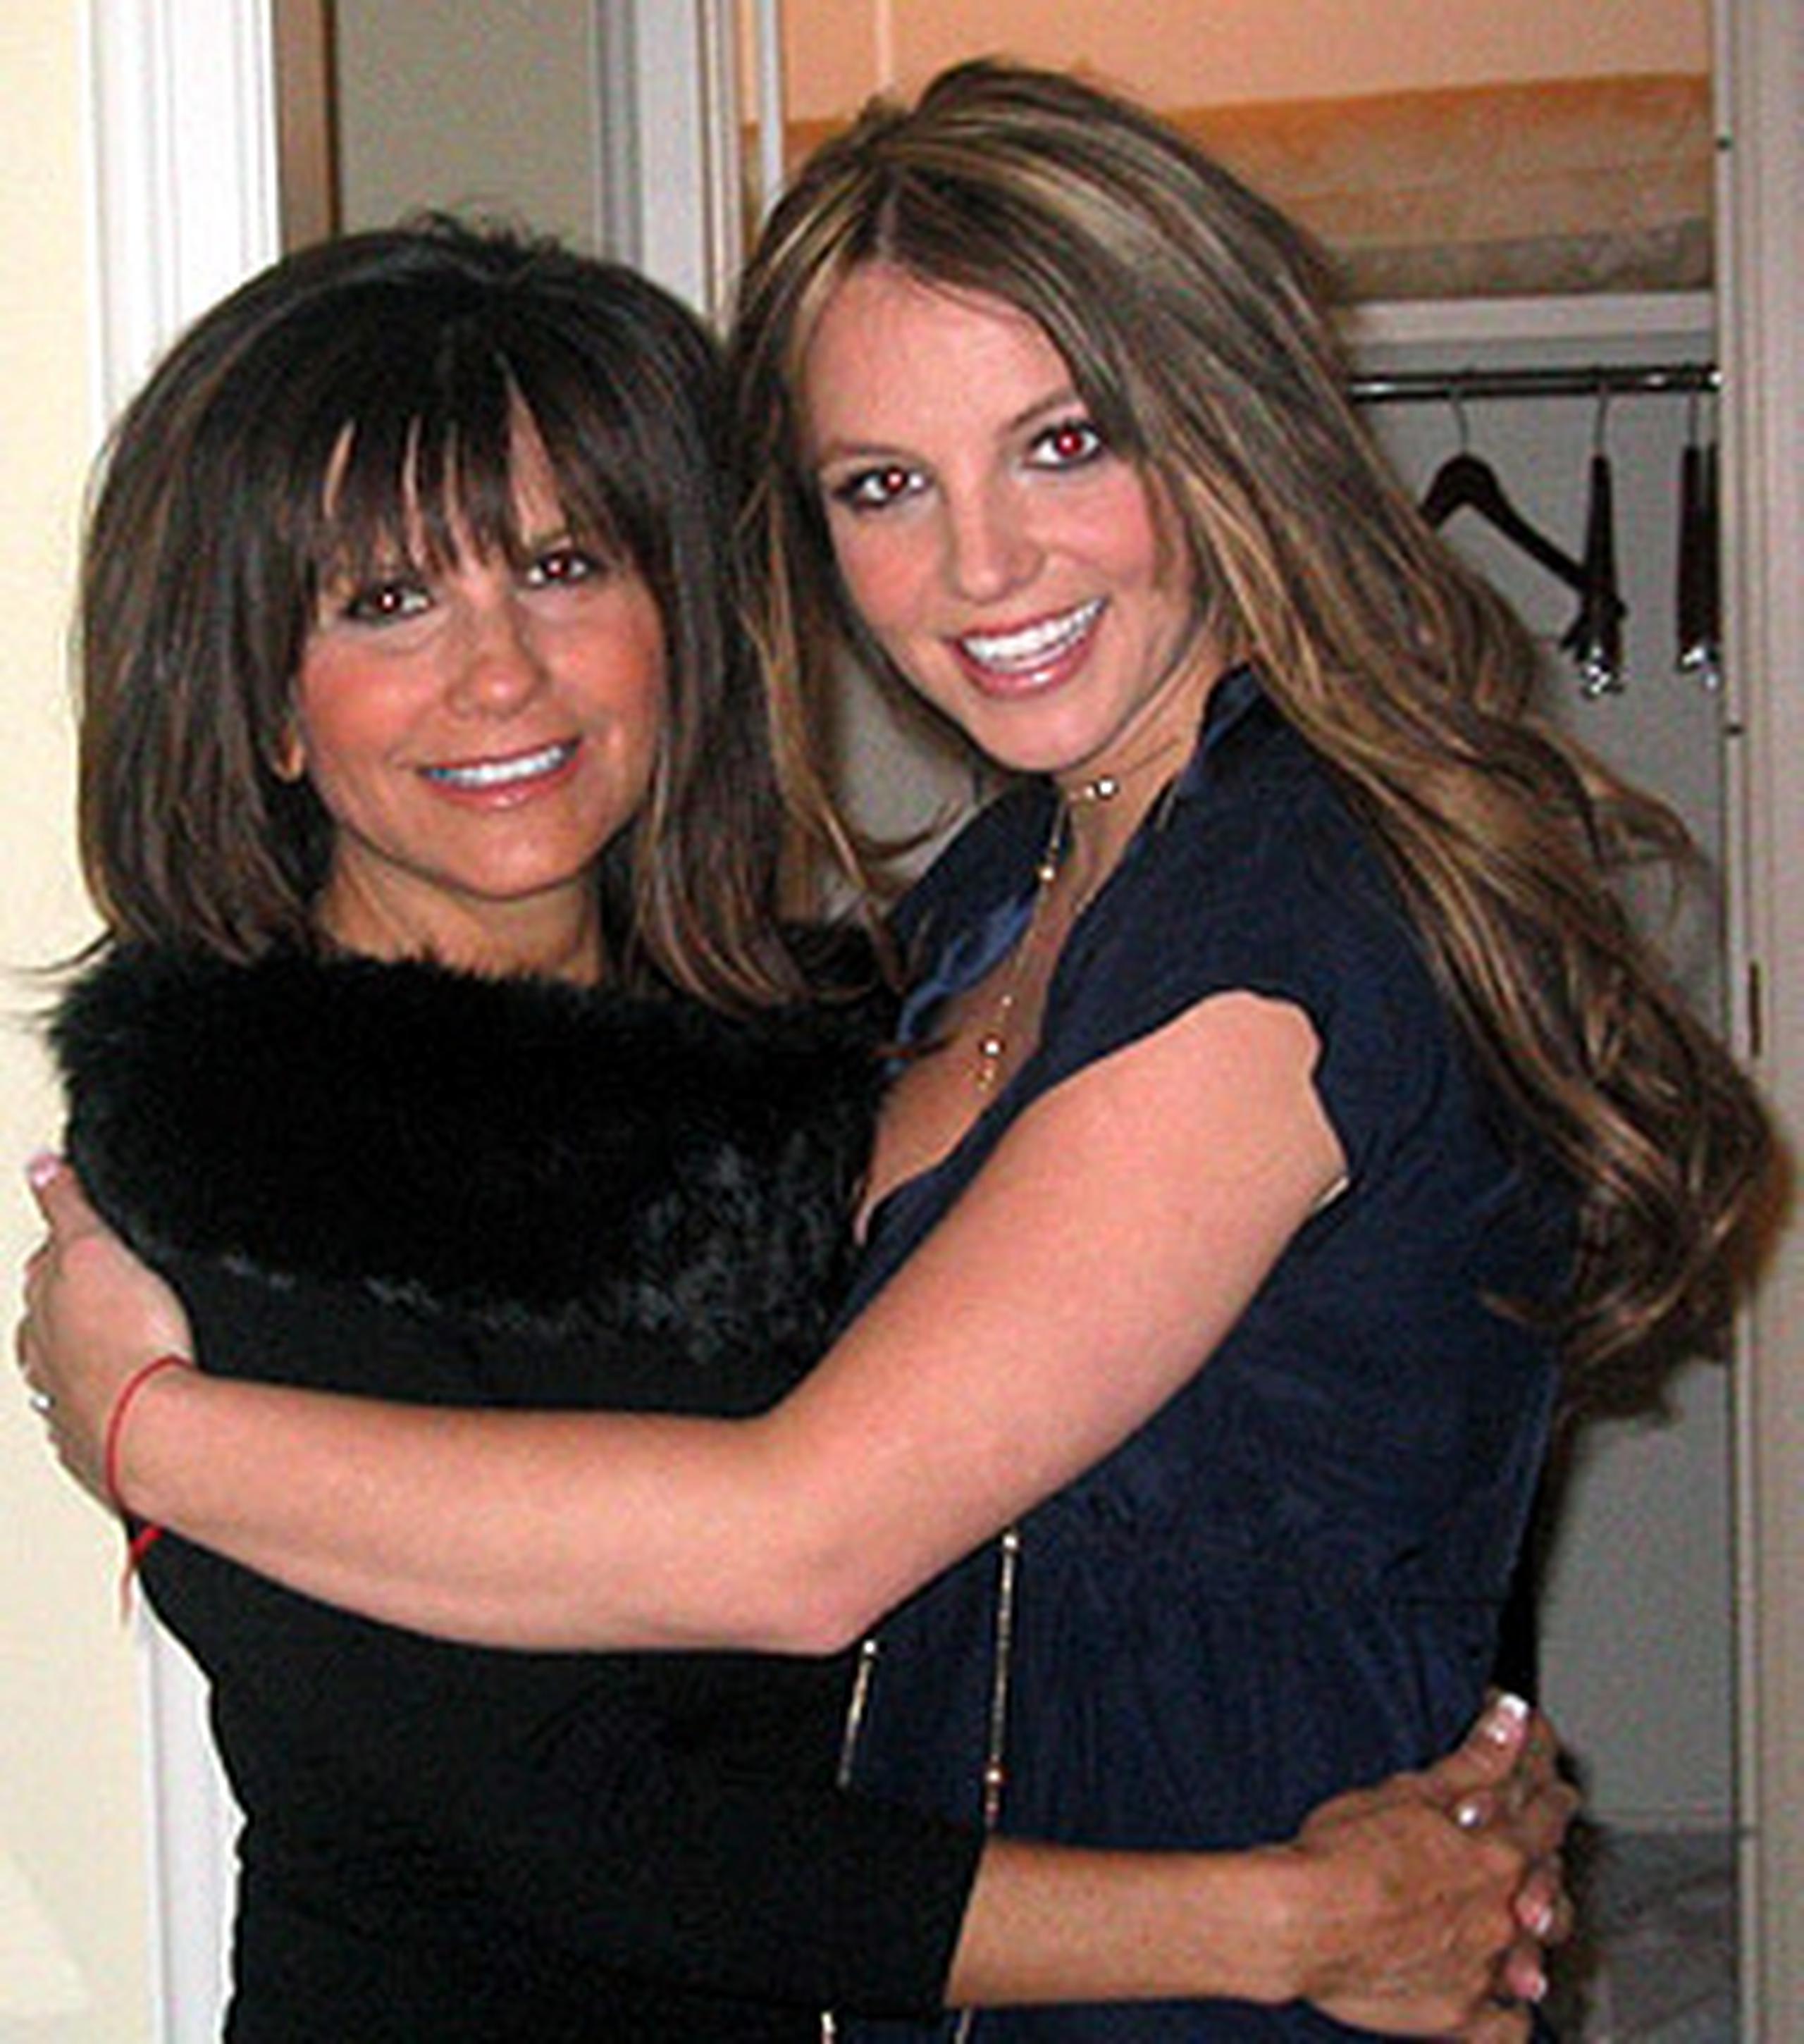 Foto de archivo en la que aparece la cantante Britney Spears (derecha) junto a su madre, Lynne Spears.